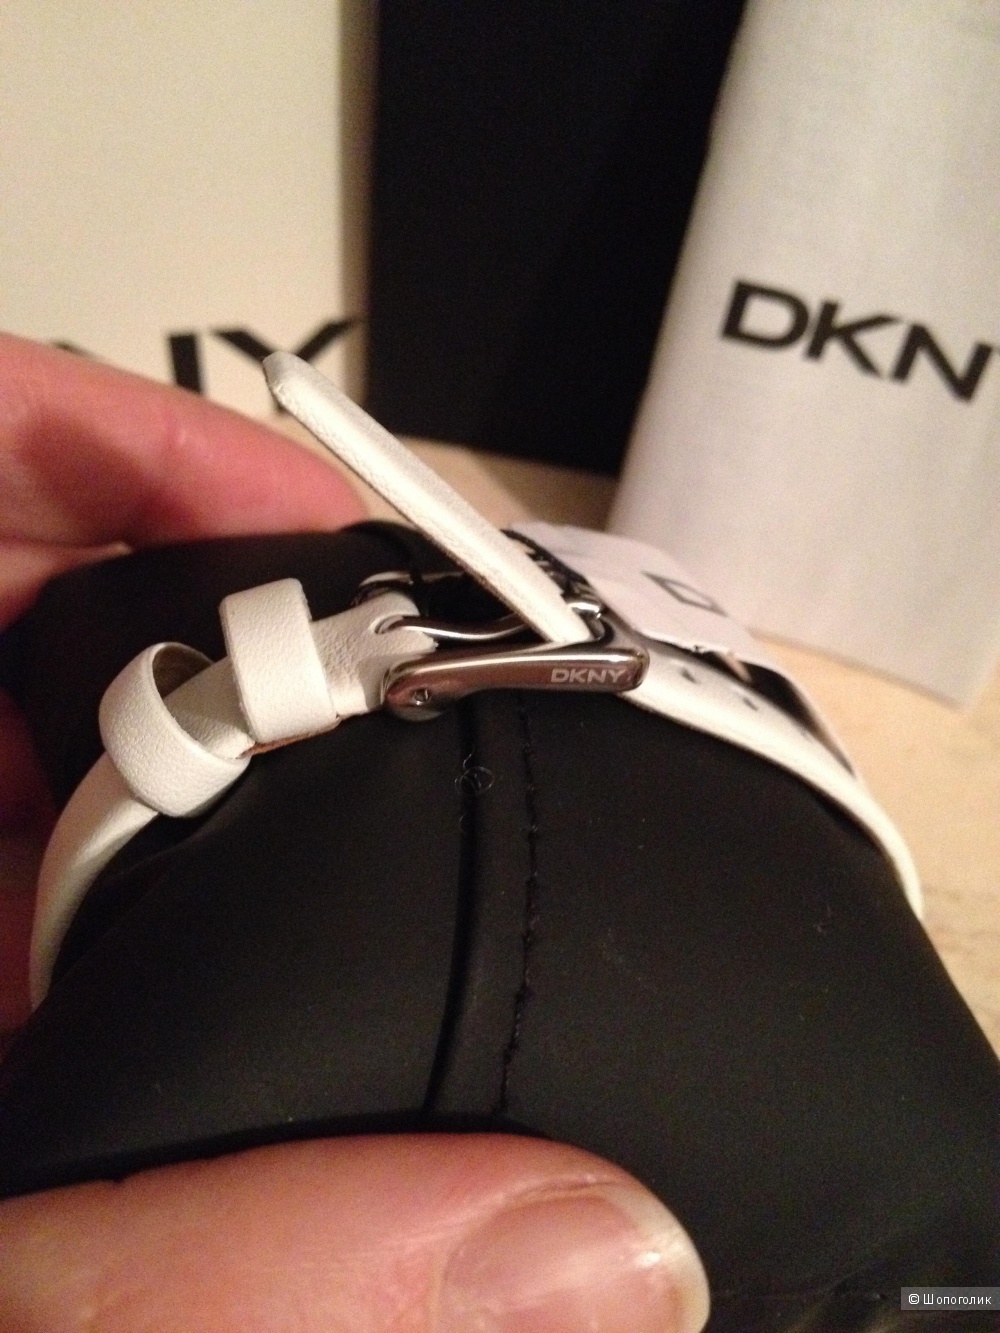 Оригинальные часы DKNY на белом кожаном ремешке.